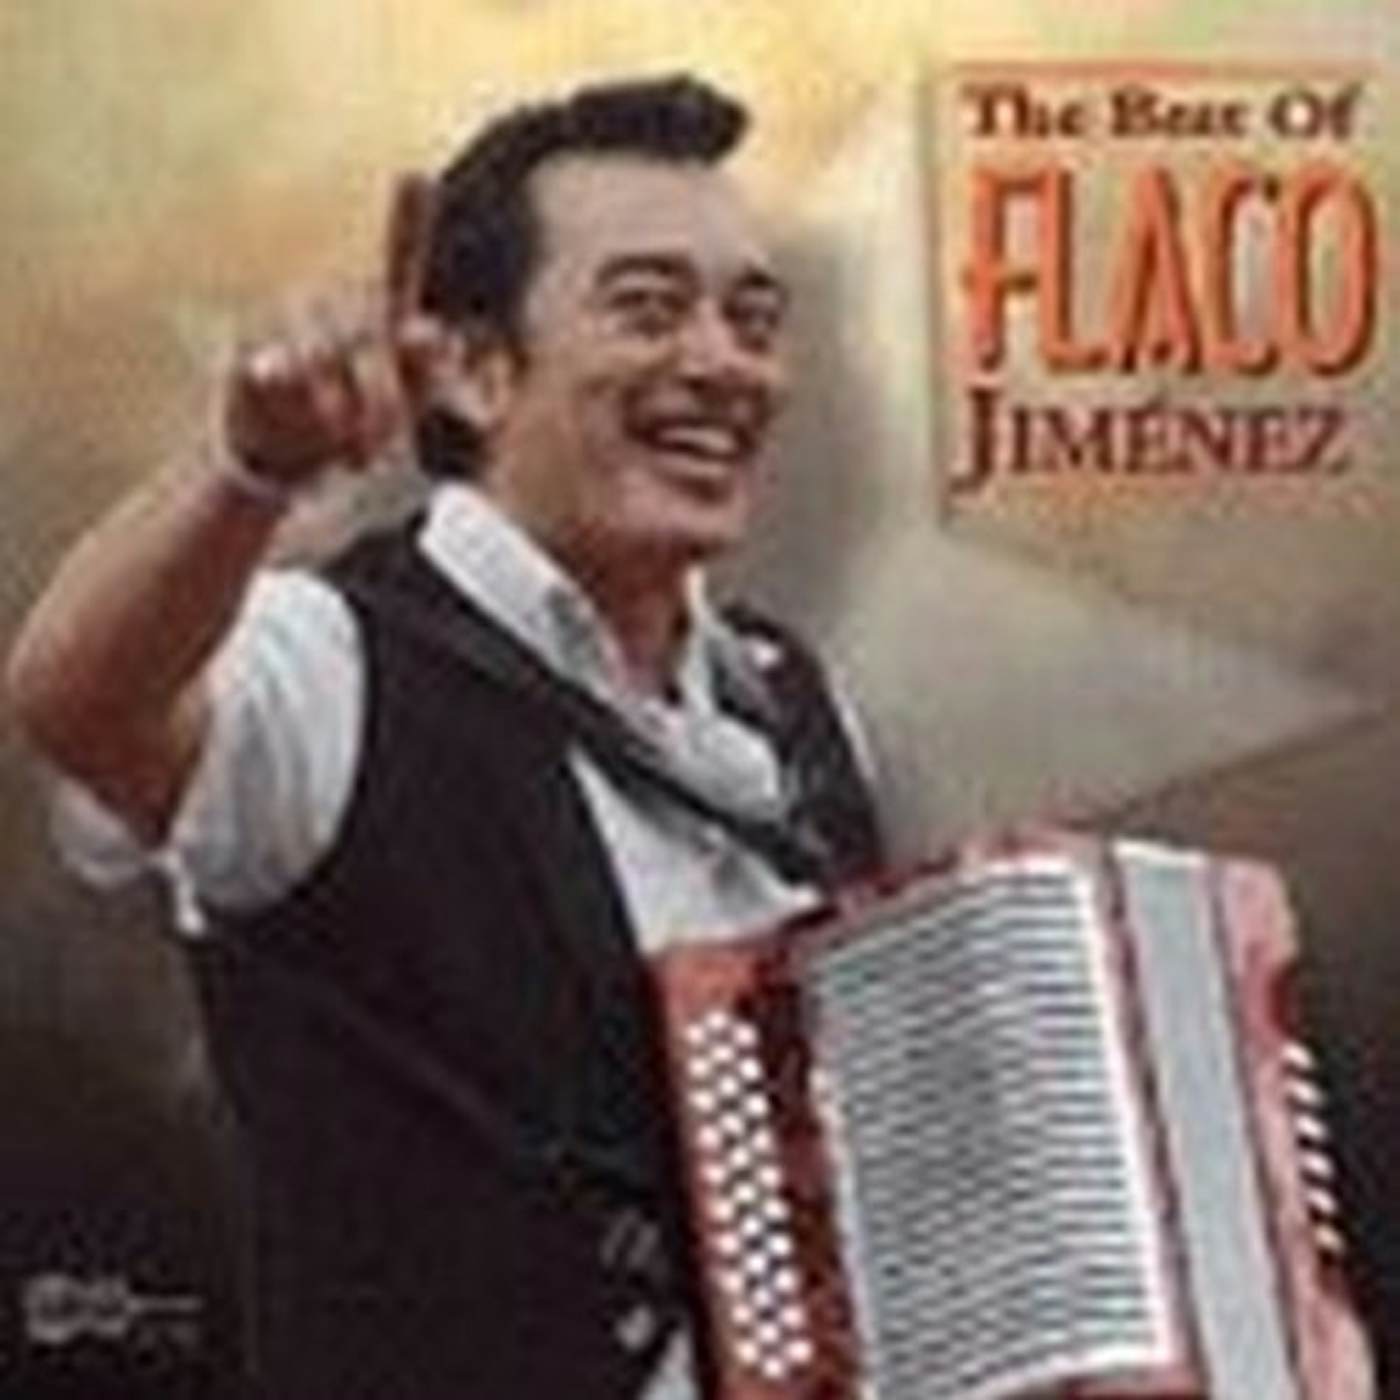 BEST OF FLACO JIMENEZ CD